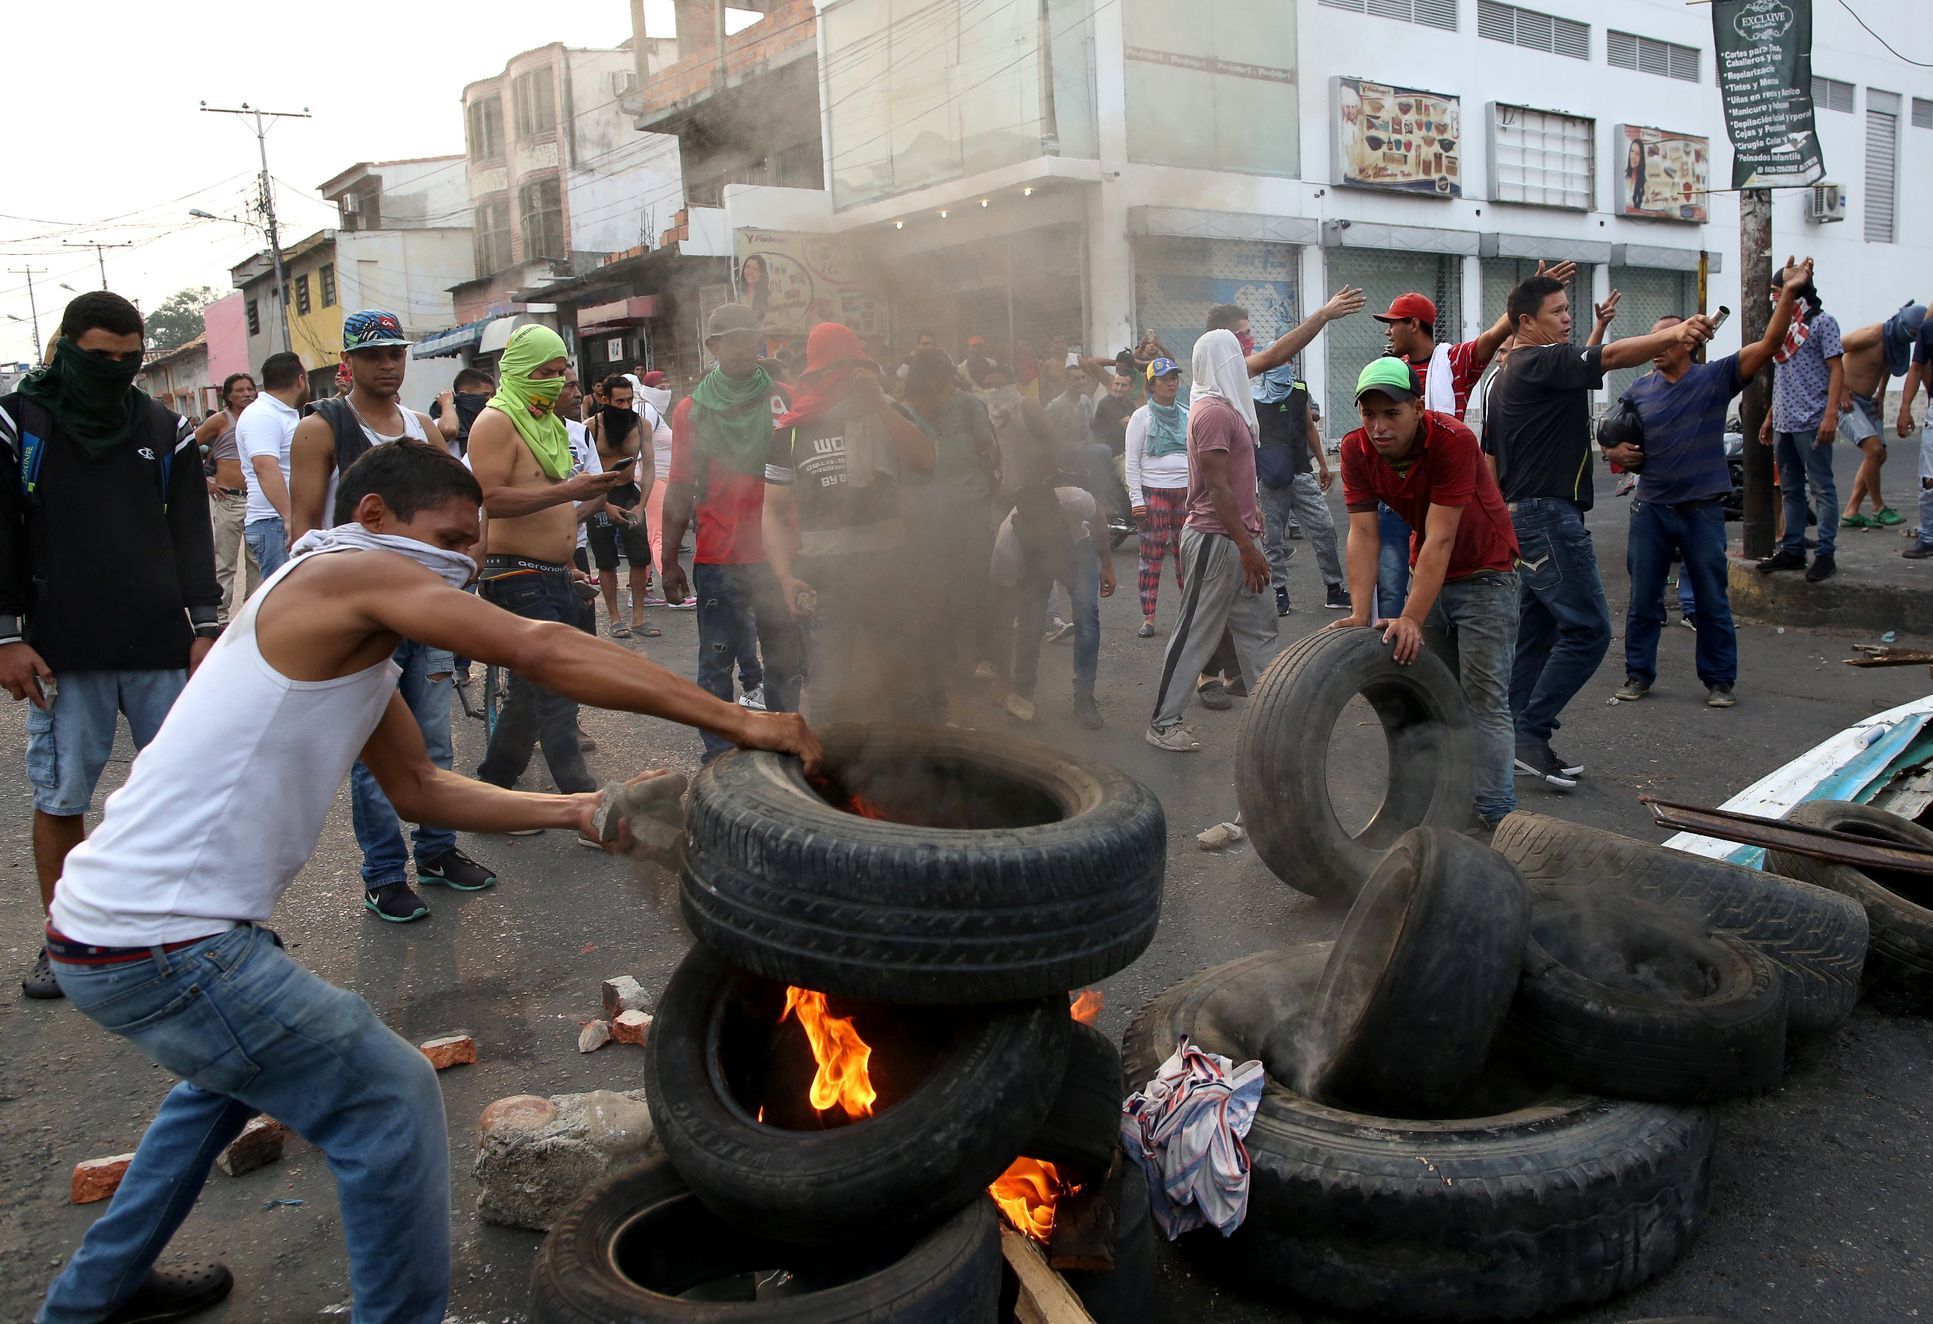 Nepokoje ve Venezuele